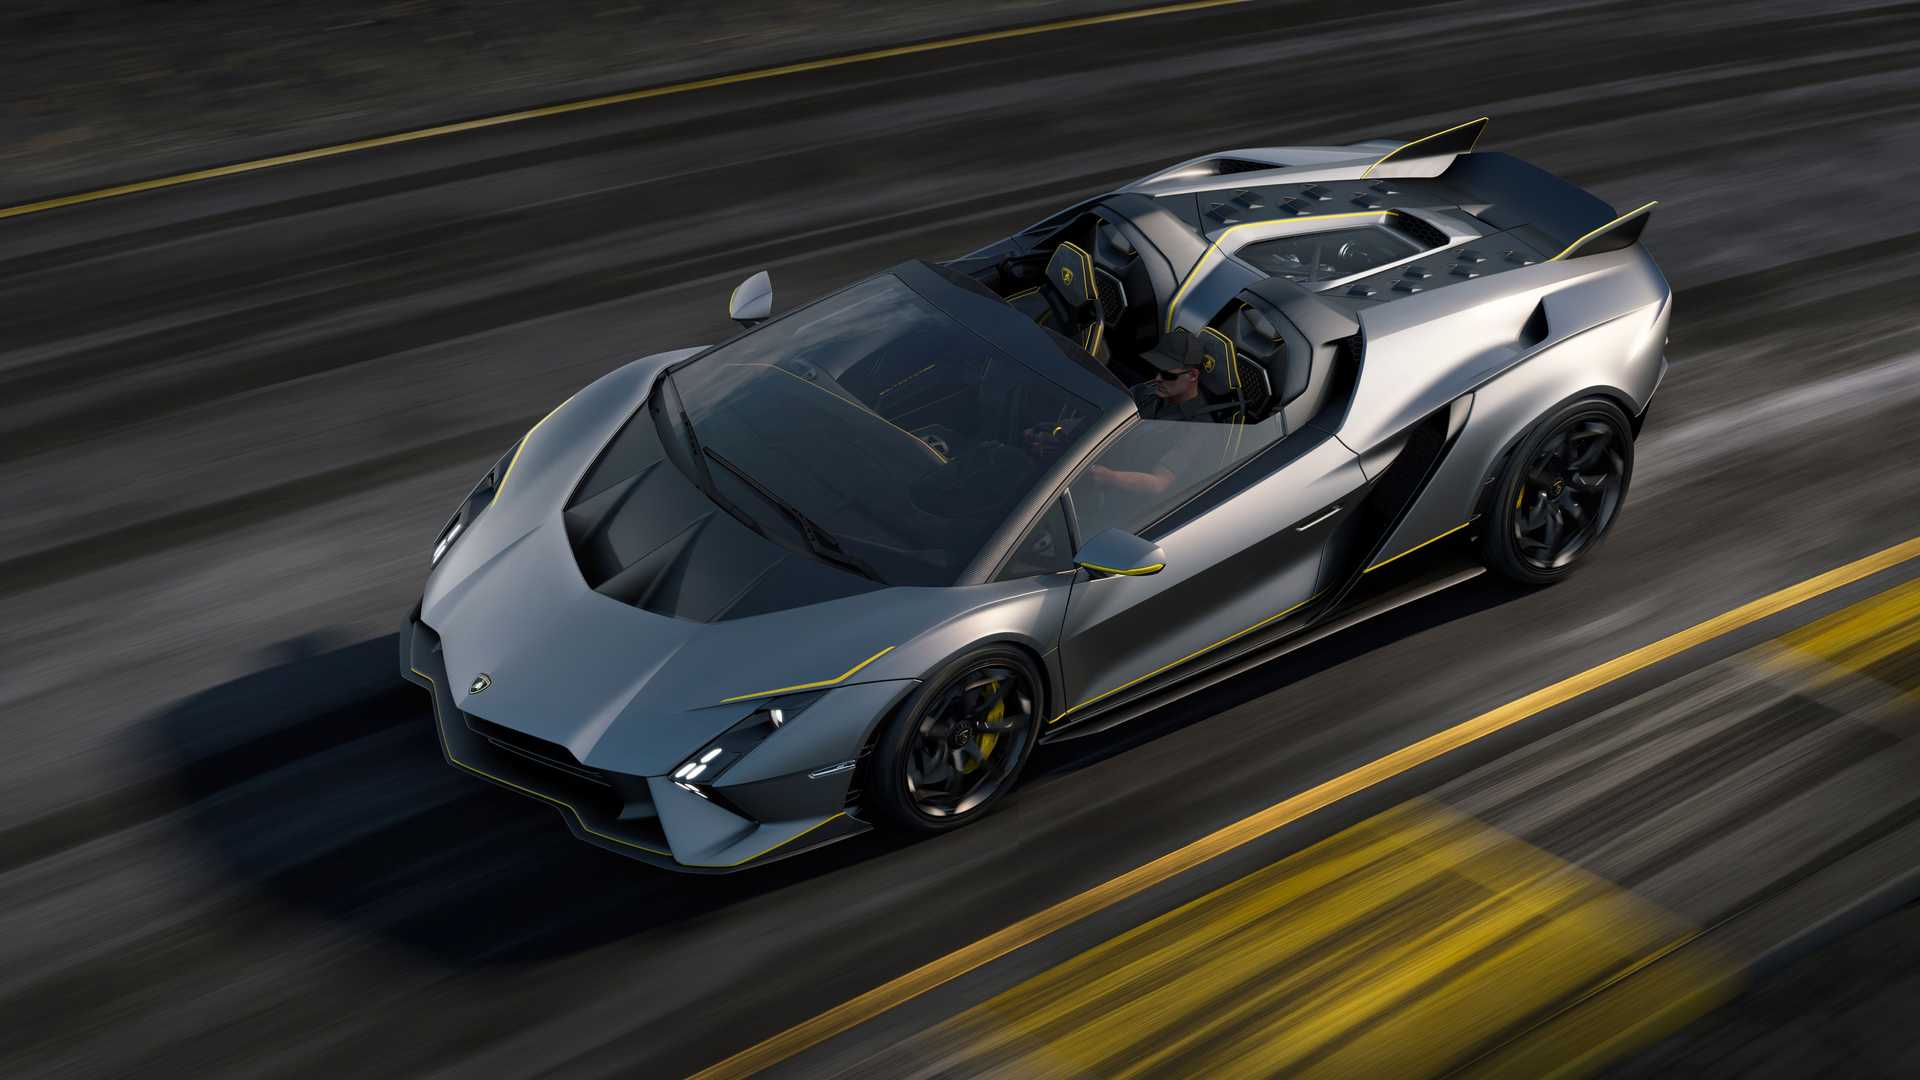 Lamborghini ra mắt bộ đôi siêu xe V12 chạy xăng cuối cùng, sau đây sẽ toàn siêu xe điện êm ru chưa biết nẹt pô kiểu gì - ảnh 11